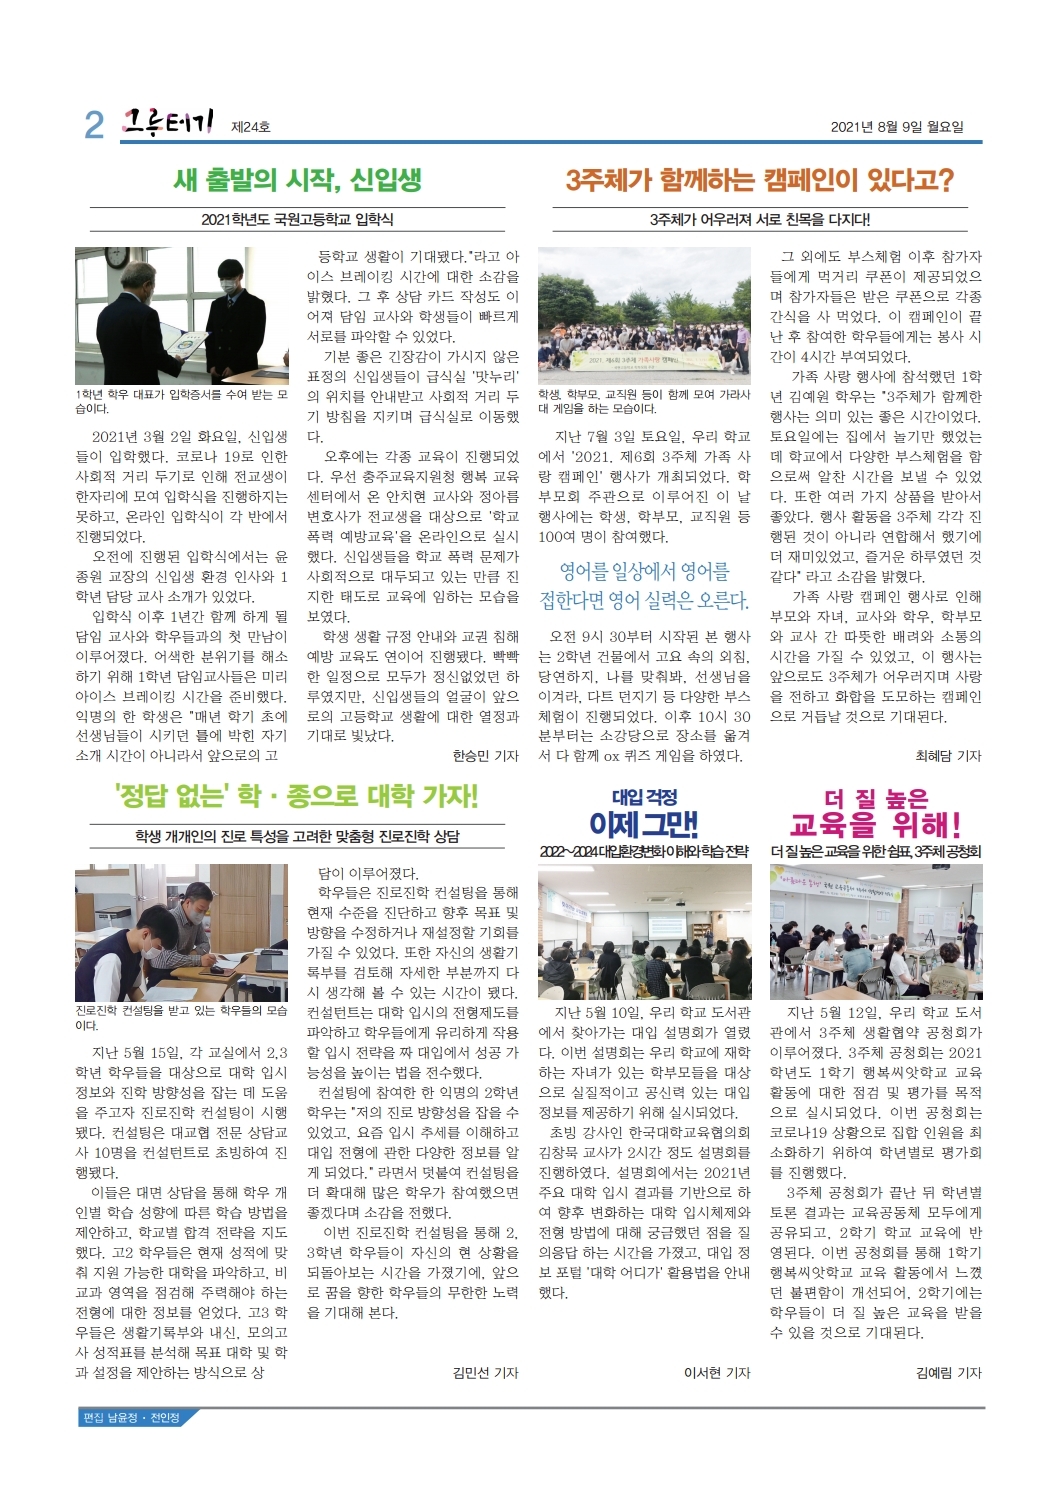 국원고 학생회 신문(21.8.9) (2)